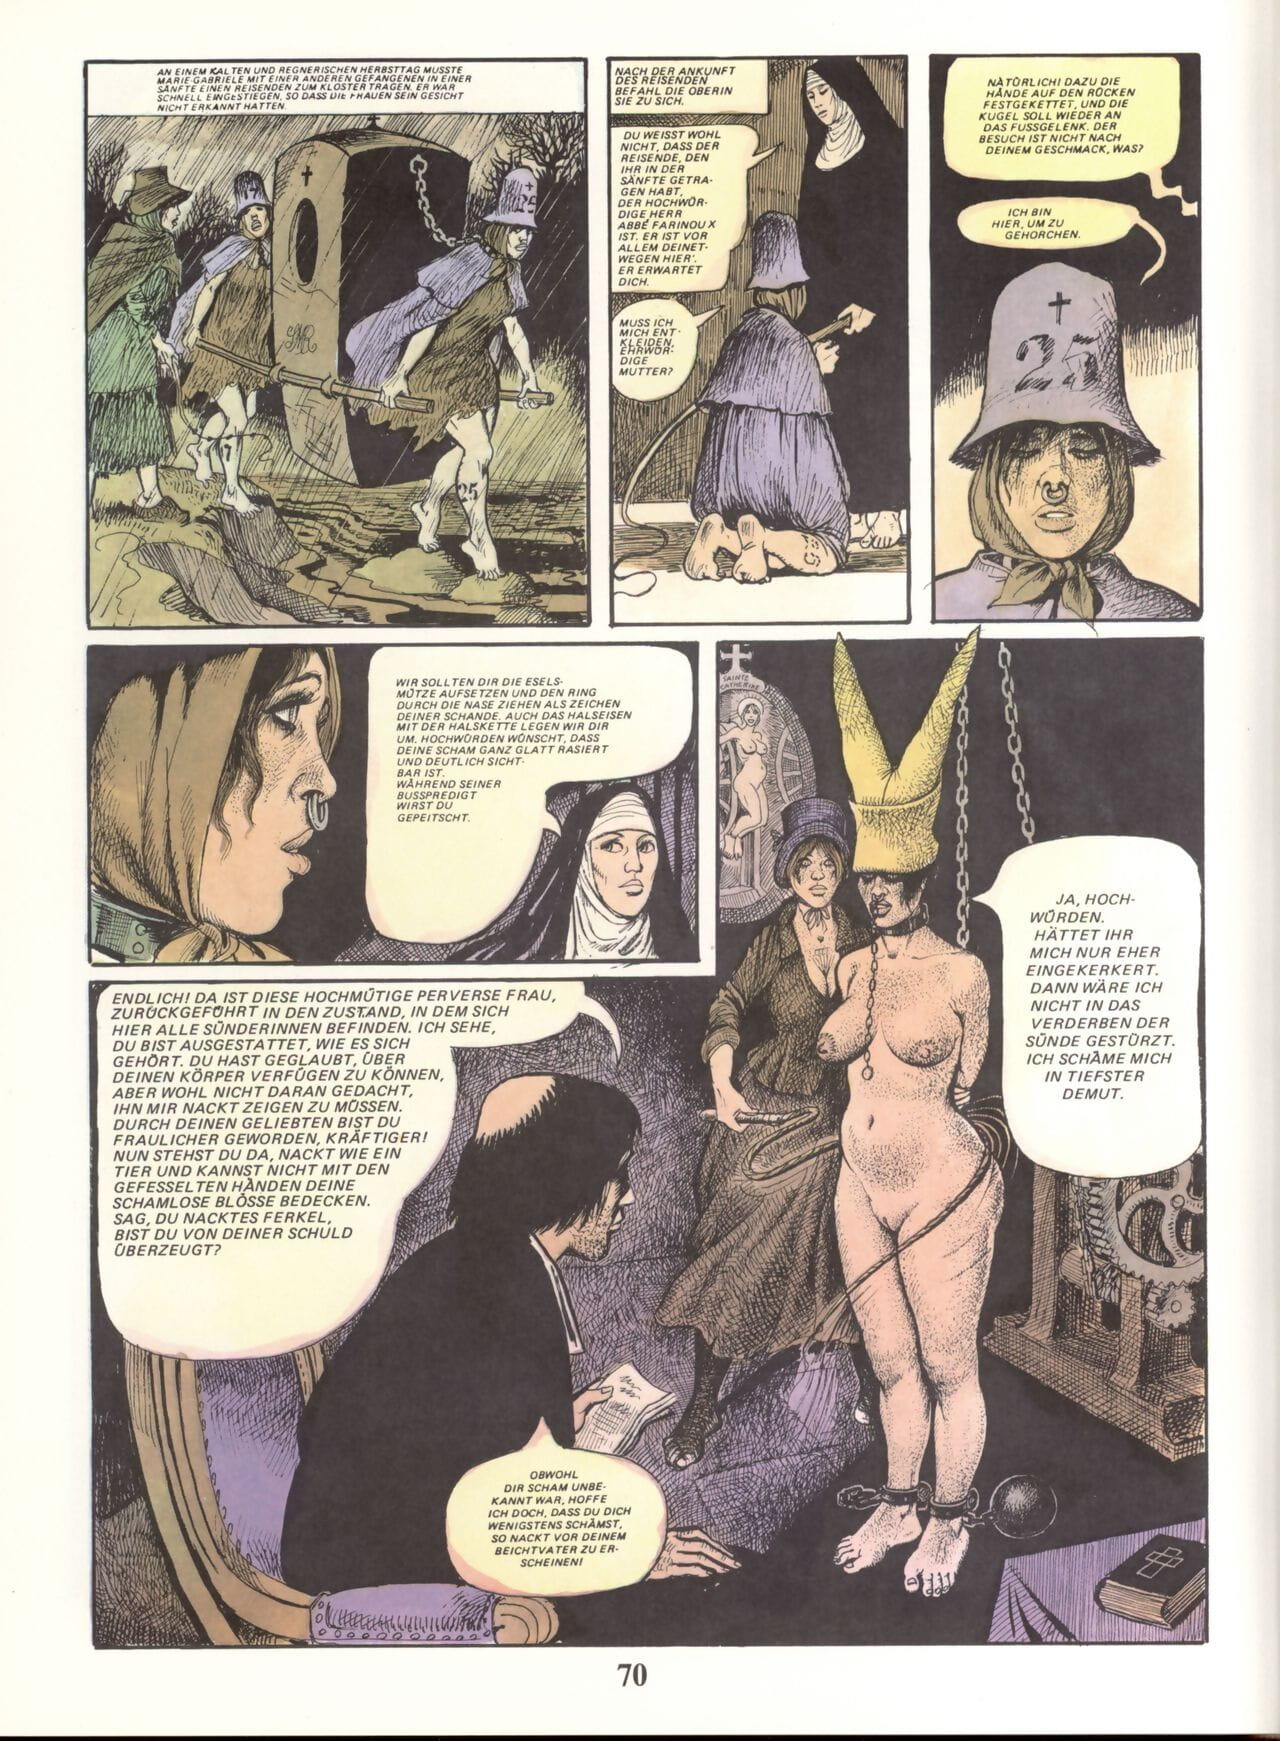 Marie Gabrielle de Saint eutropo #02 parte 5 page 1